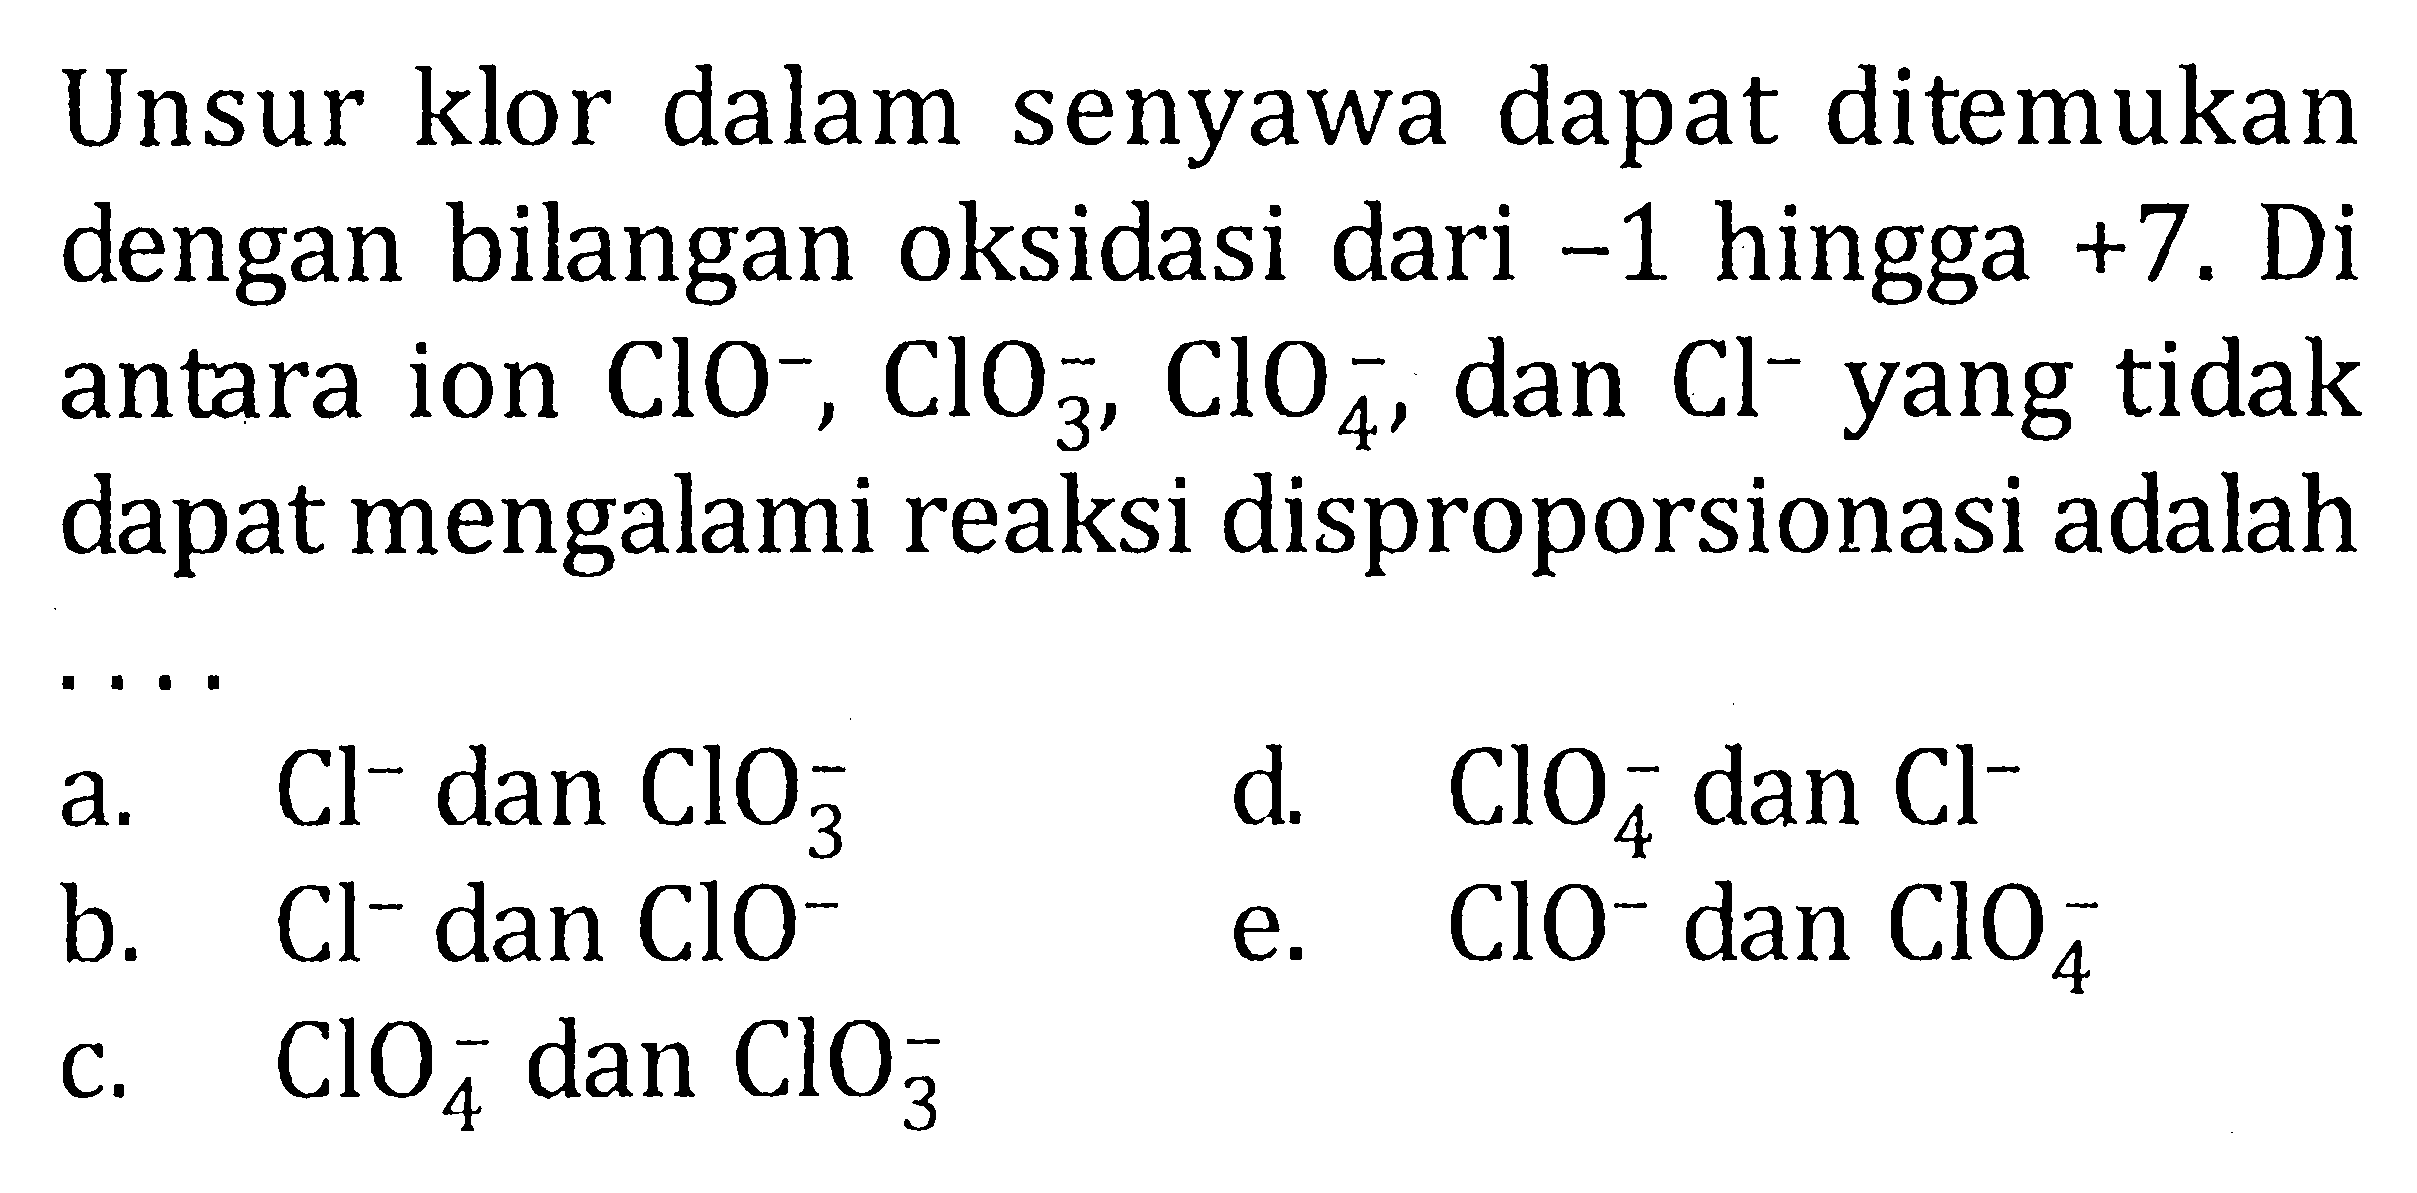 Unsur klor dalam senyawa dapat ditemukan dengan bilangan oksidasi dari -1 hingga +7. Di antara ion ClO^-, ClO3^-, ClO4^-, dan Cl^- yang tidak dapat mengalami reaksi disproporsionasi adalah ....